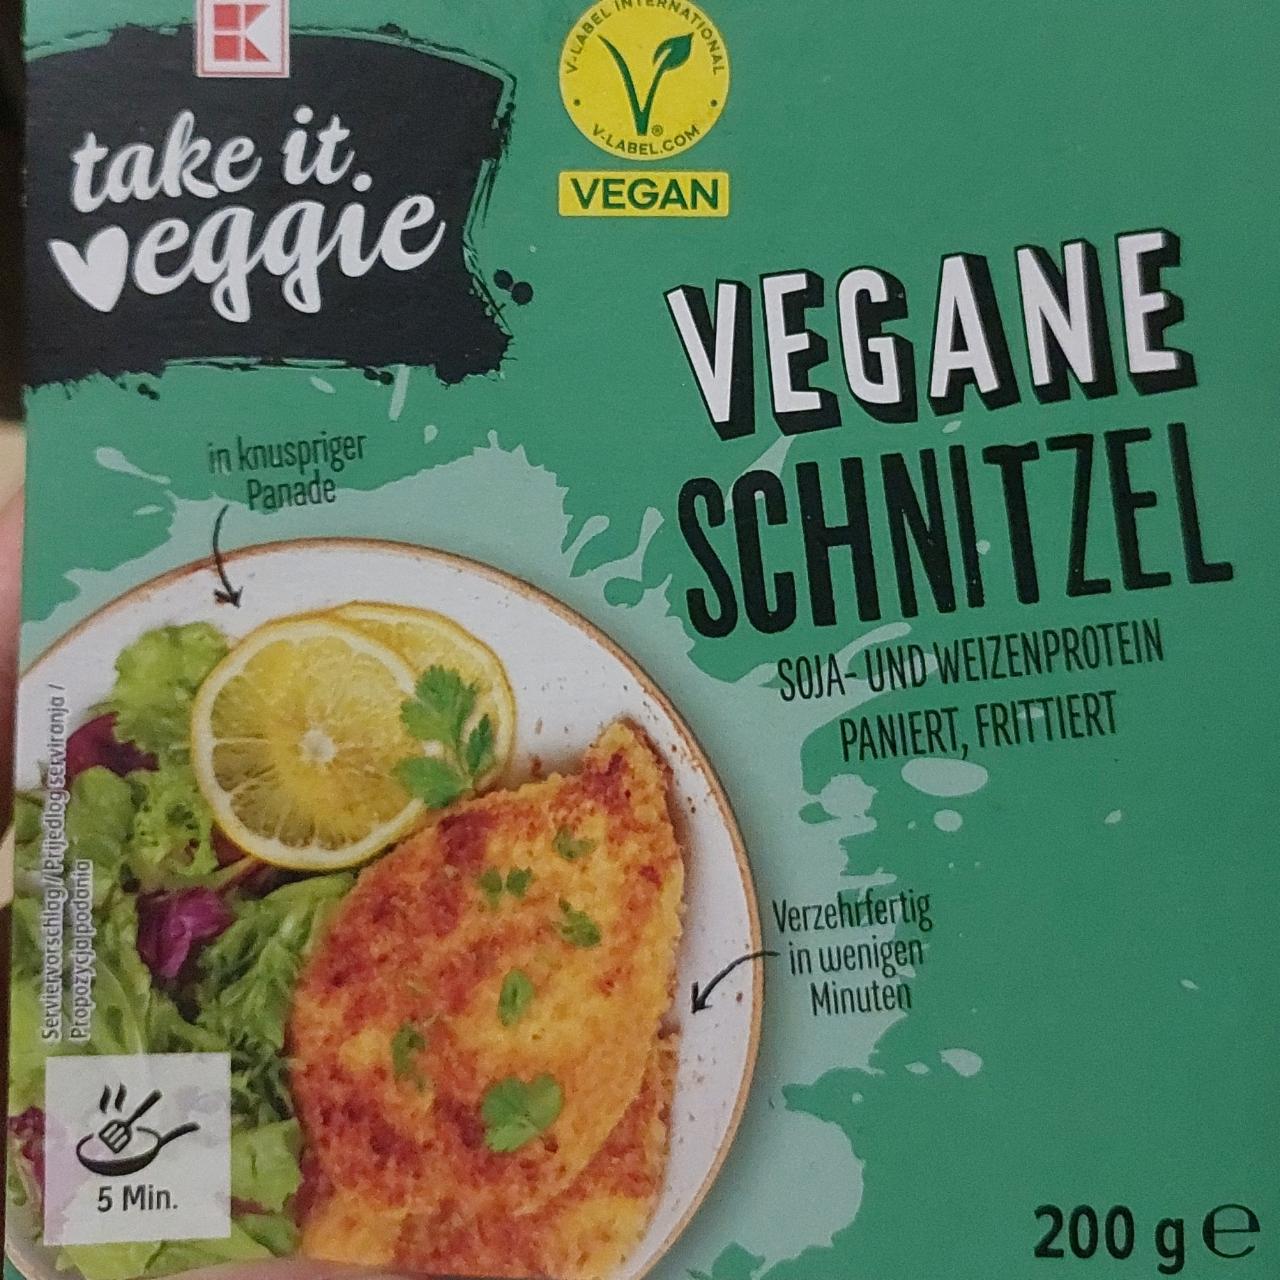 Zdjęcia - Vegane Shnitzel K-take it veggie